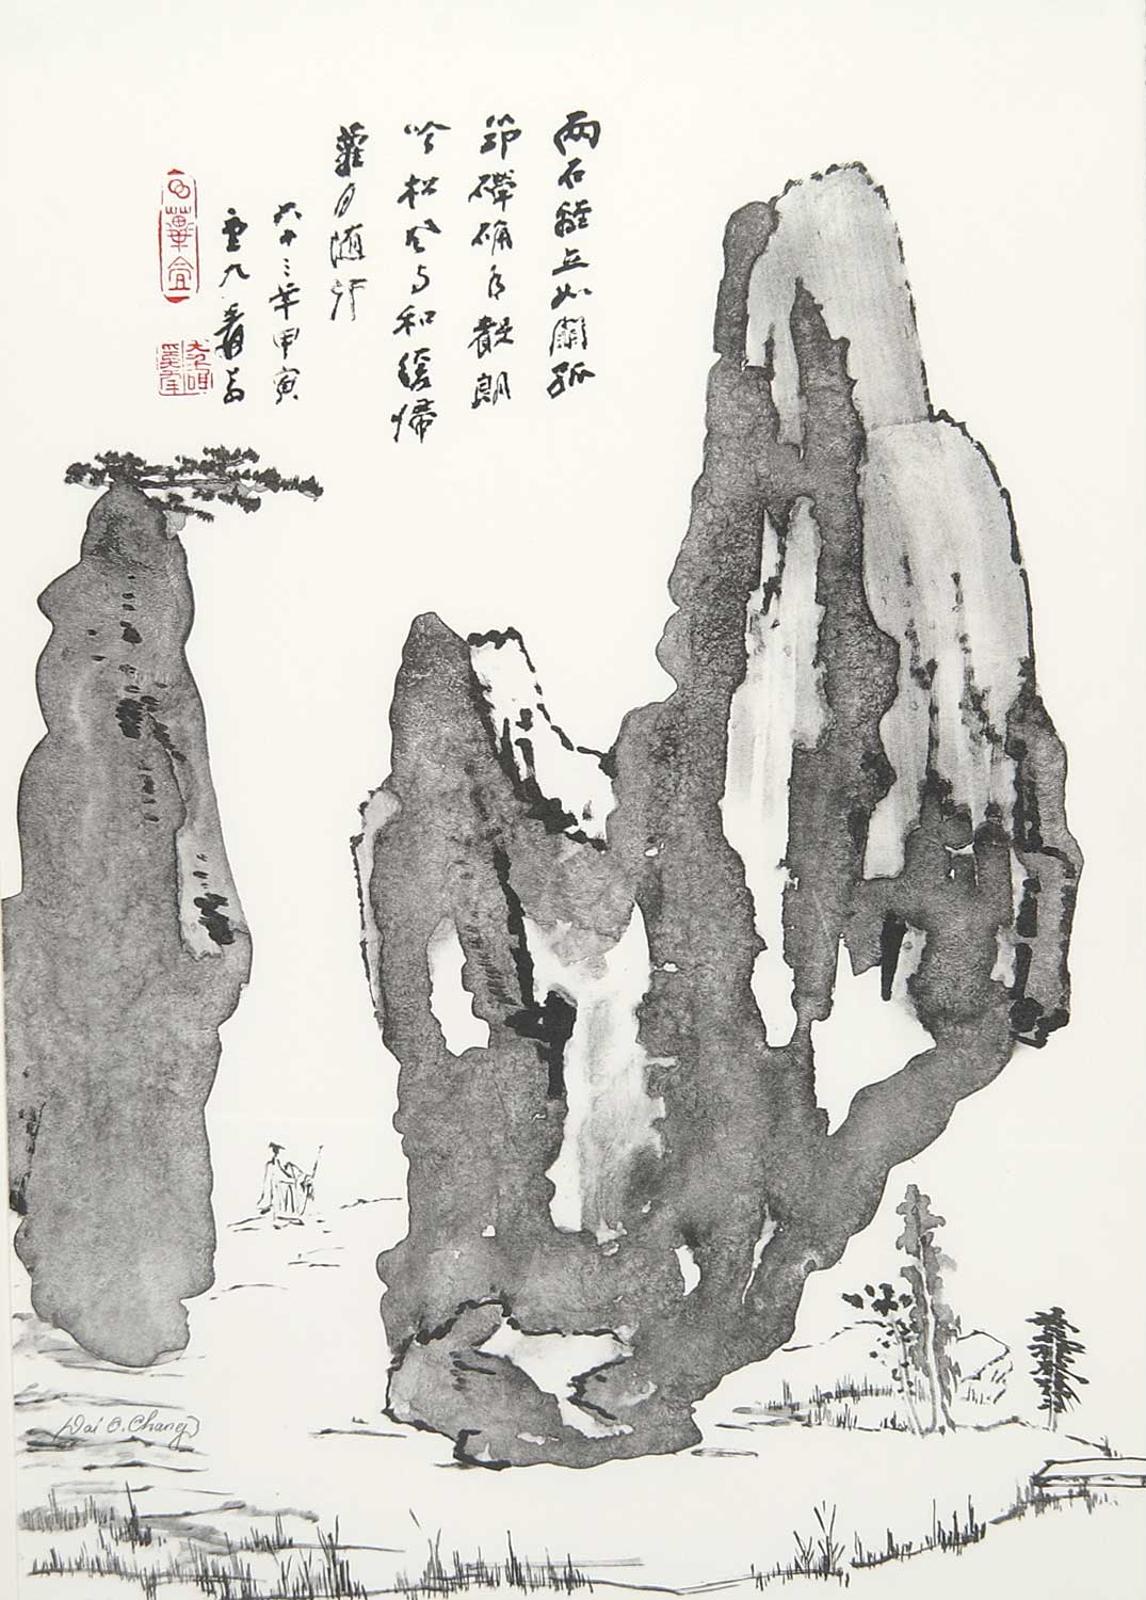 Daqian [Chang Dai Chen] Zhang - Homeward Passage Through the Stone Gate at Dusk  #24/125